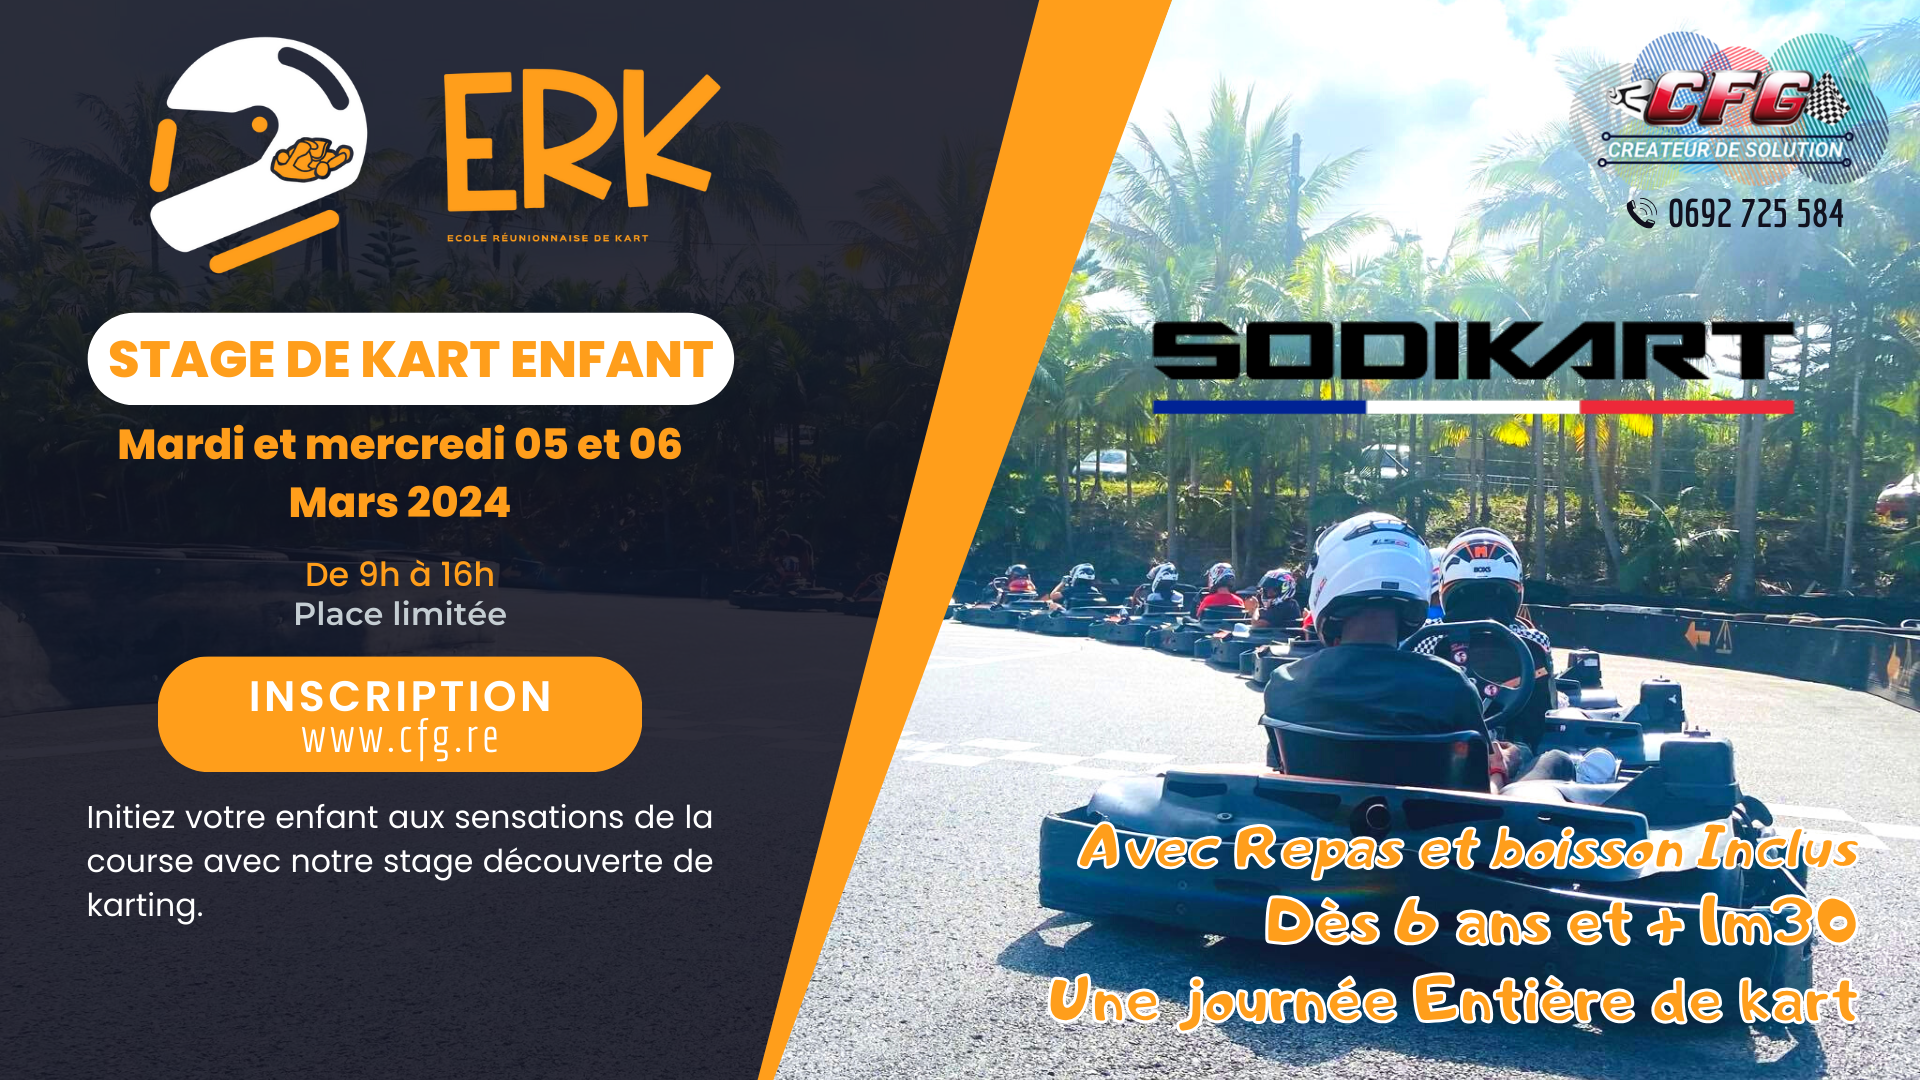 ERK - Stage Enfant – Ecole Réunionnaise de Karting – 05 et 06 mars 2024